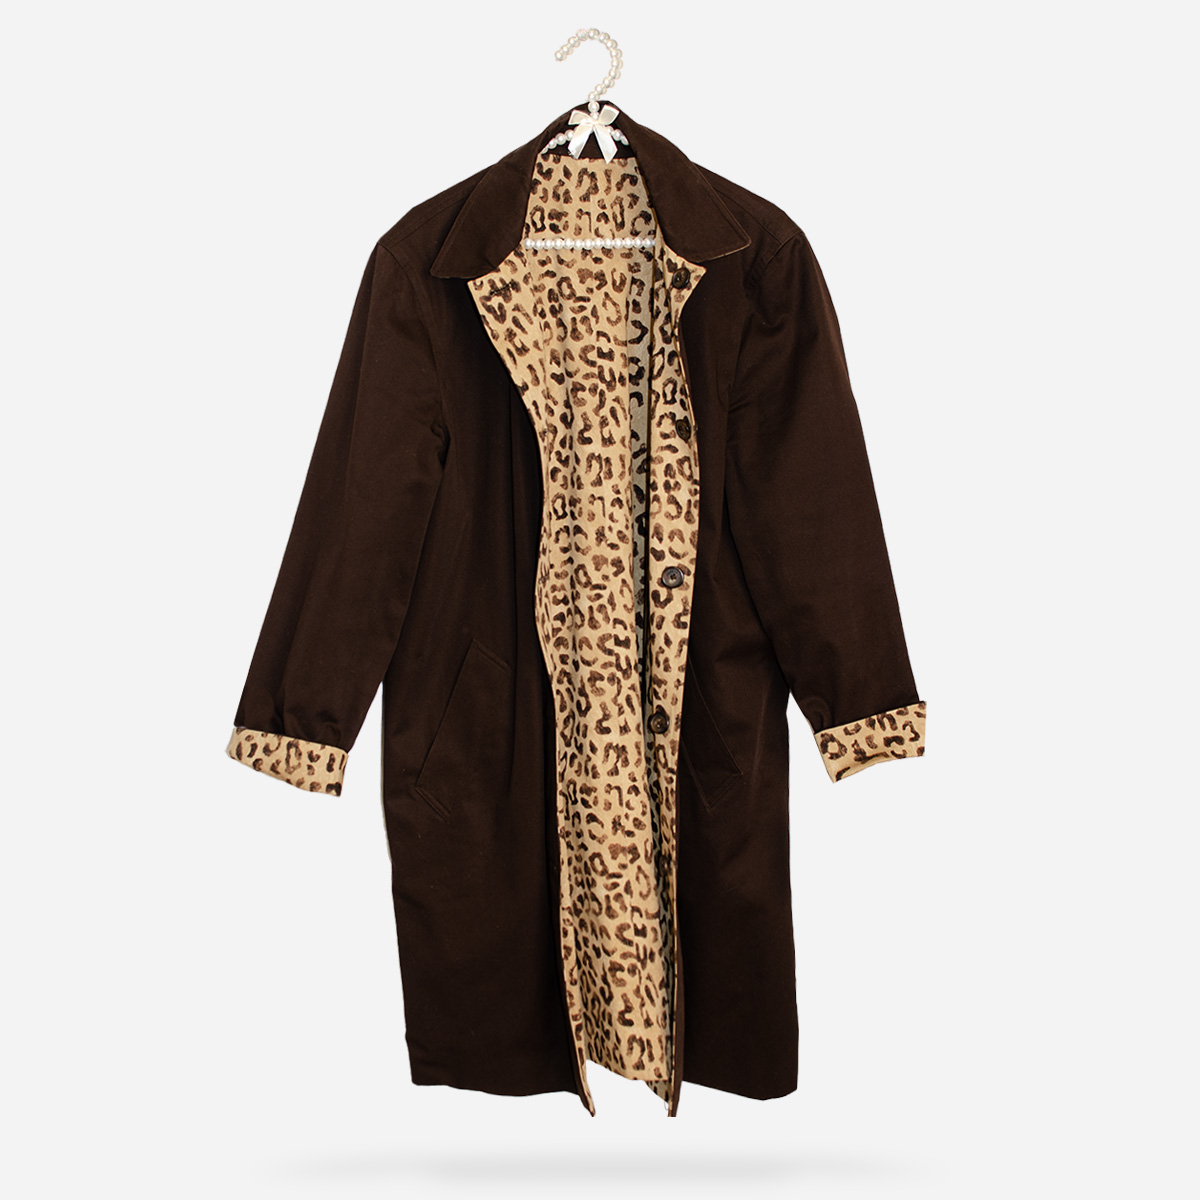 women's brown coat, reversible to leopard print